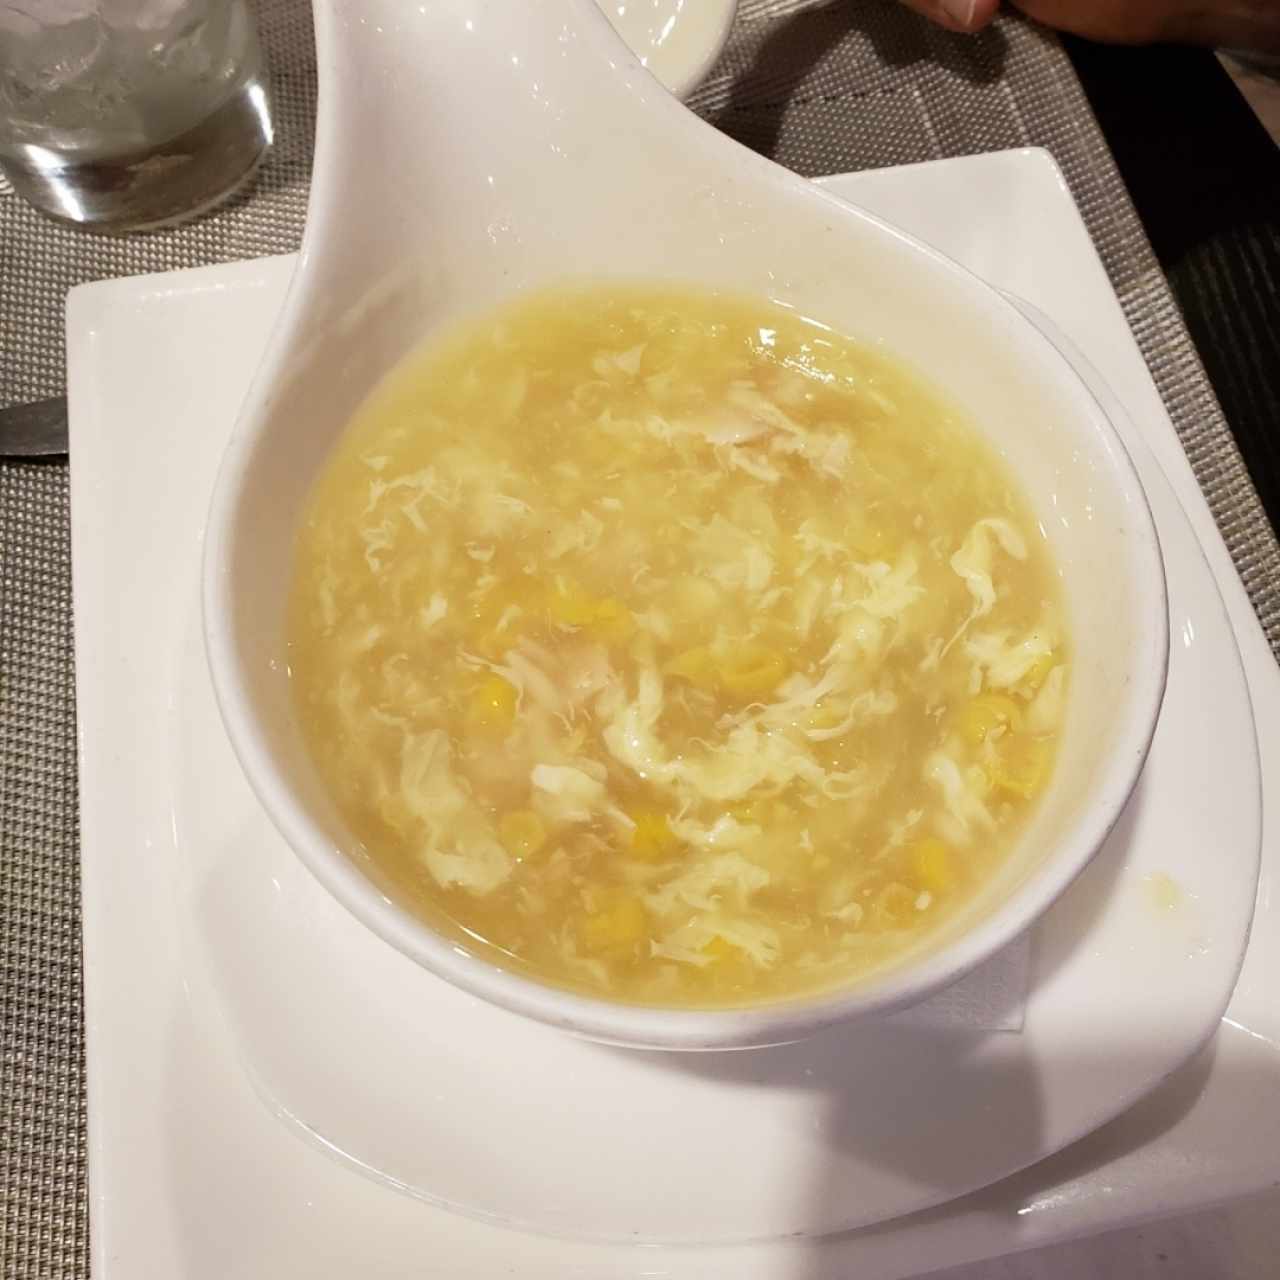 sopa de maiz